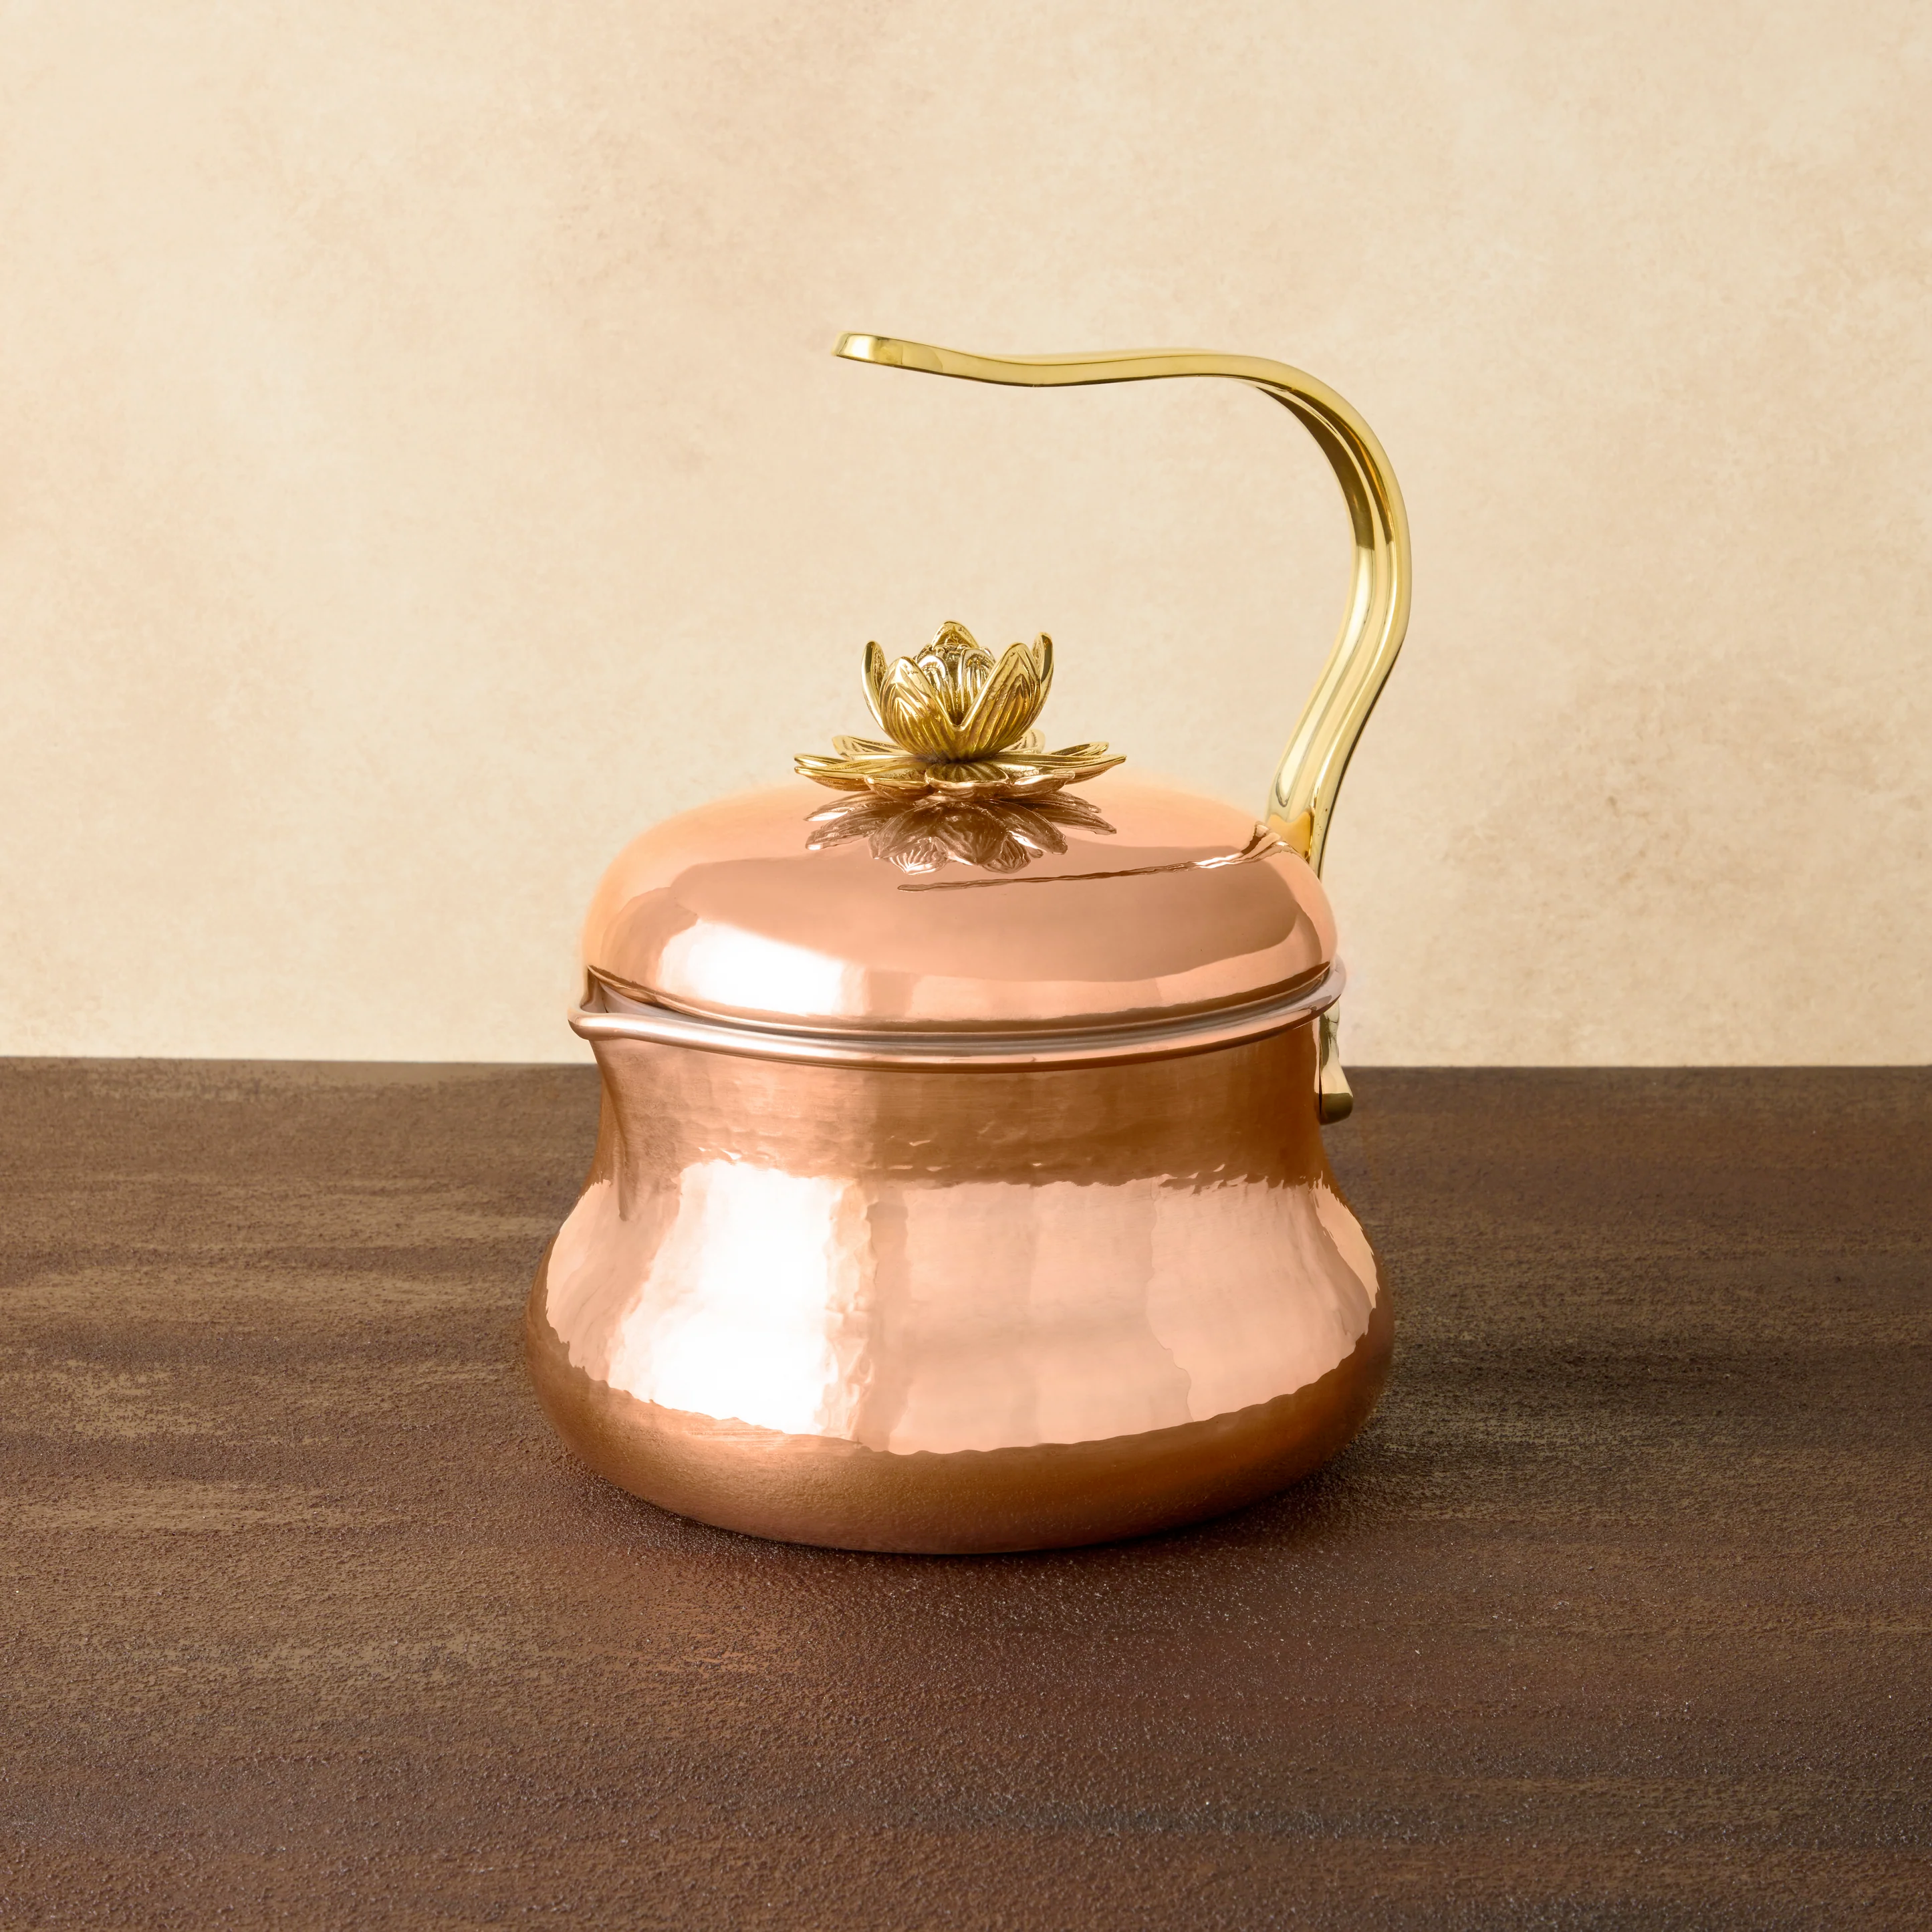 Ruffoni Copper Tea Kettle - Historia